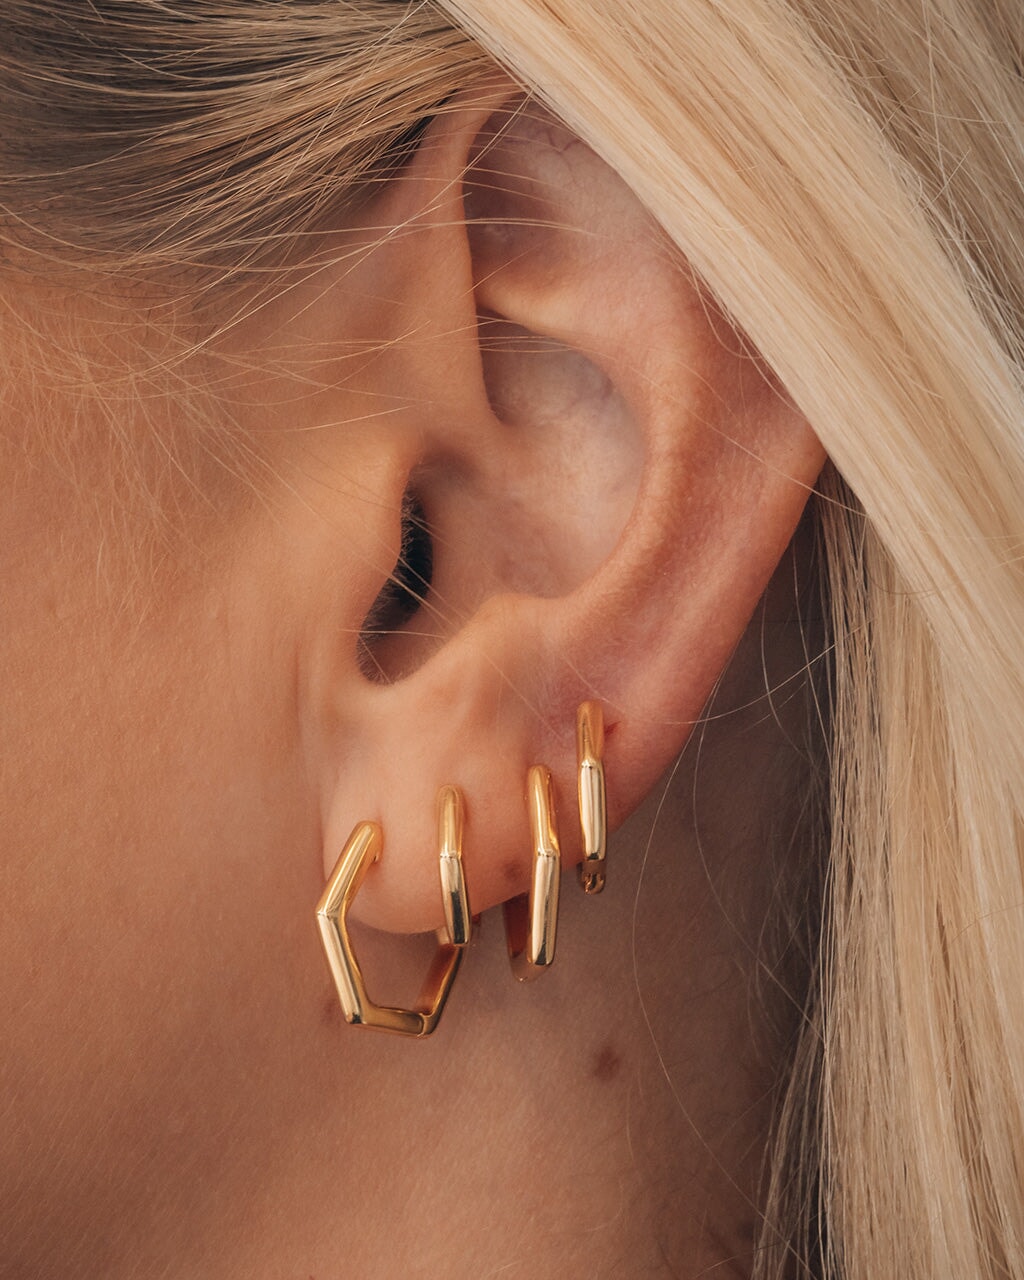 Emmy's Earrings - Hypoallergenic Earrings